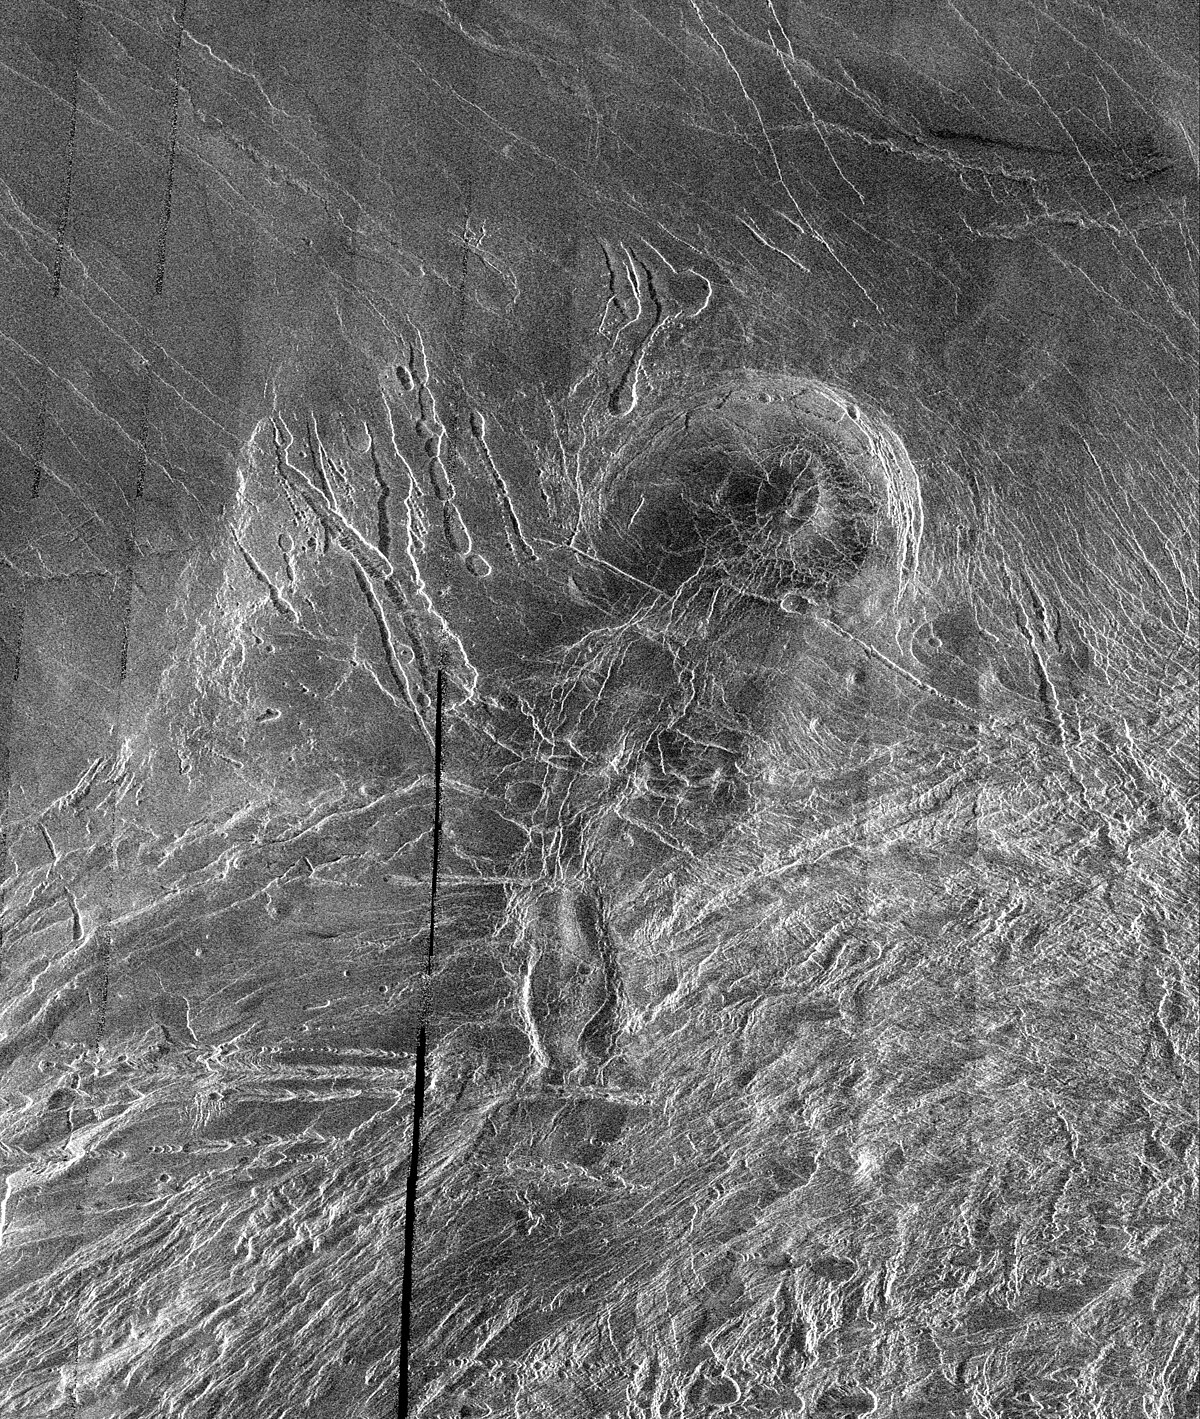 Image radar du sud de Lakshmi Planum montrant, au sud, le début de Clotho Tessera et, au nord, les surfaces lisses de Lakshmi. La structure circulaire au centre, Siddons Patera, serait une caldeira volcanique, et les creux allongés sur la gauche seraient des cavités résultant de l'effondrement de tubes de lave.